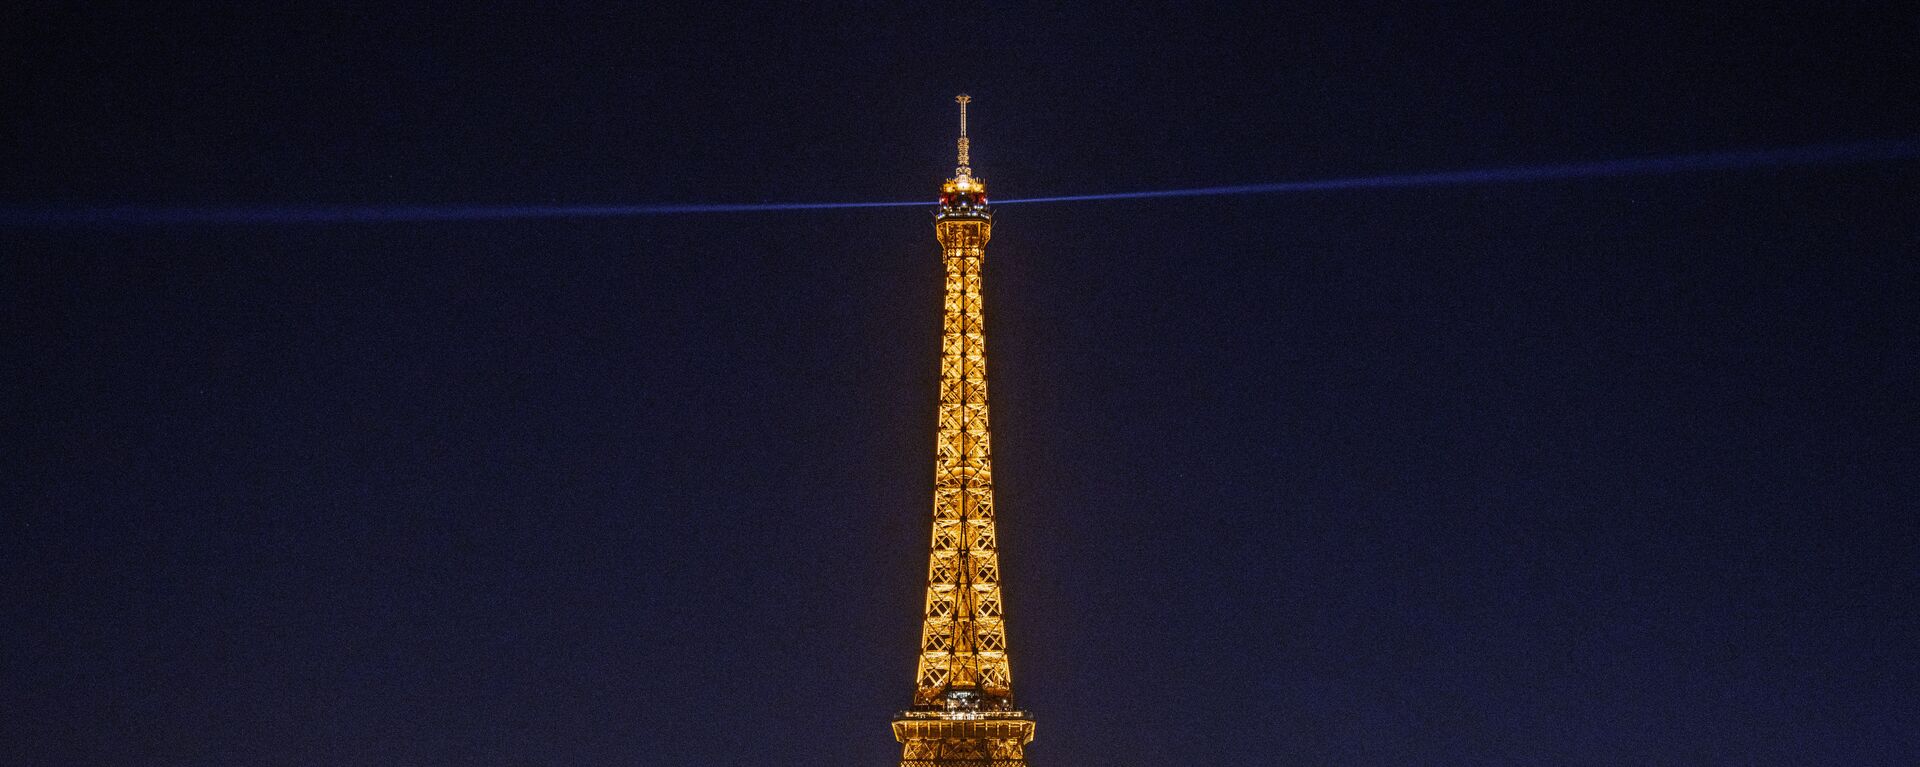 برج إيفل في باريس، فرنسا - عندما يضيء برج إيفل في الليل، يتم تصنيفه على أنه تركيب فني، وبالتالي فهو محمي بموجب حقوق الطبع والنشر. هذا يعني أنه ليس من المفترض أن تنشر صورًا منه عبر الإنترنت، أو تقوم بتوزيعها تجاريًا. - سبوتنيك عربي, 1920, 17.09.2021